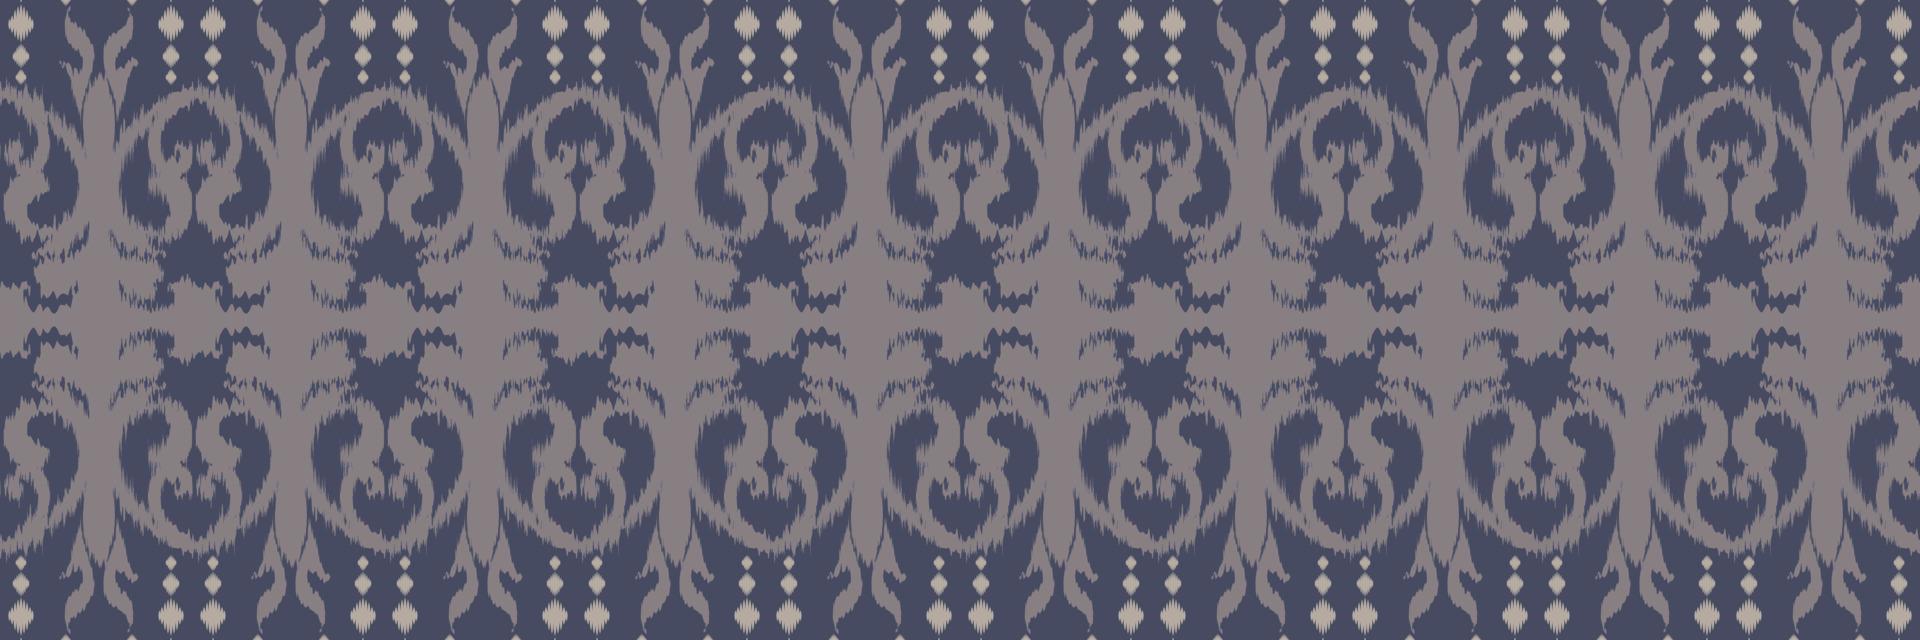 ikat blommig stam- korsa sömlös mönster. etnisk geometrisk ikkat batik digital vektor textil- design för grafik tyg saree mughal borsta symbol strängar textur kurti kurtis kurtas